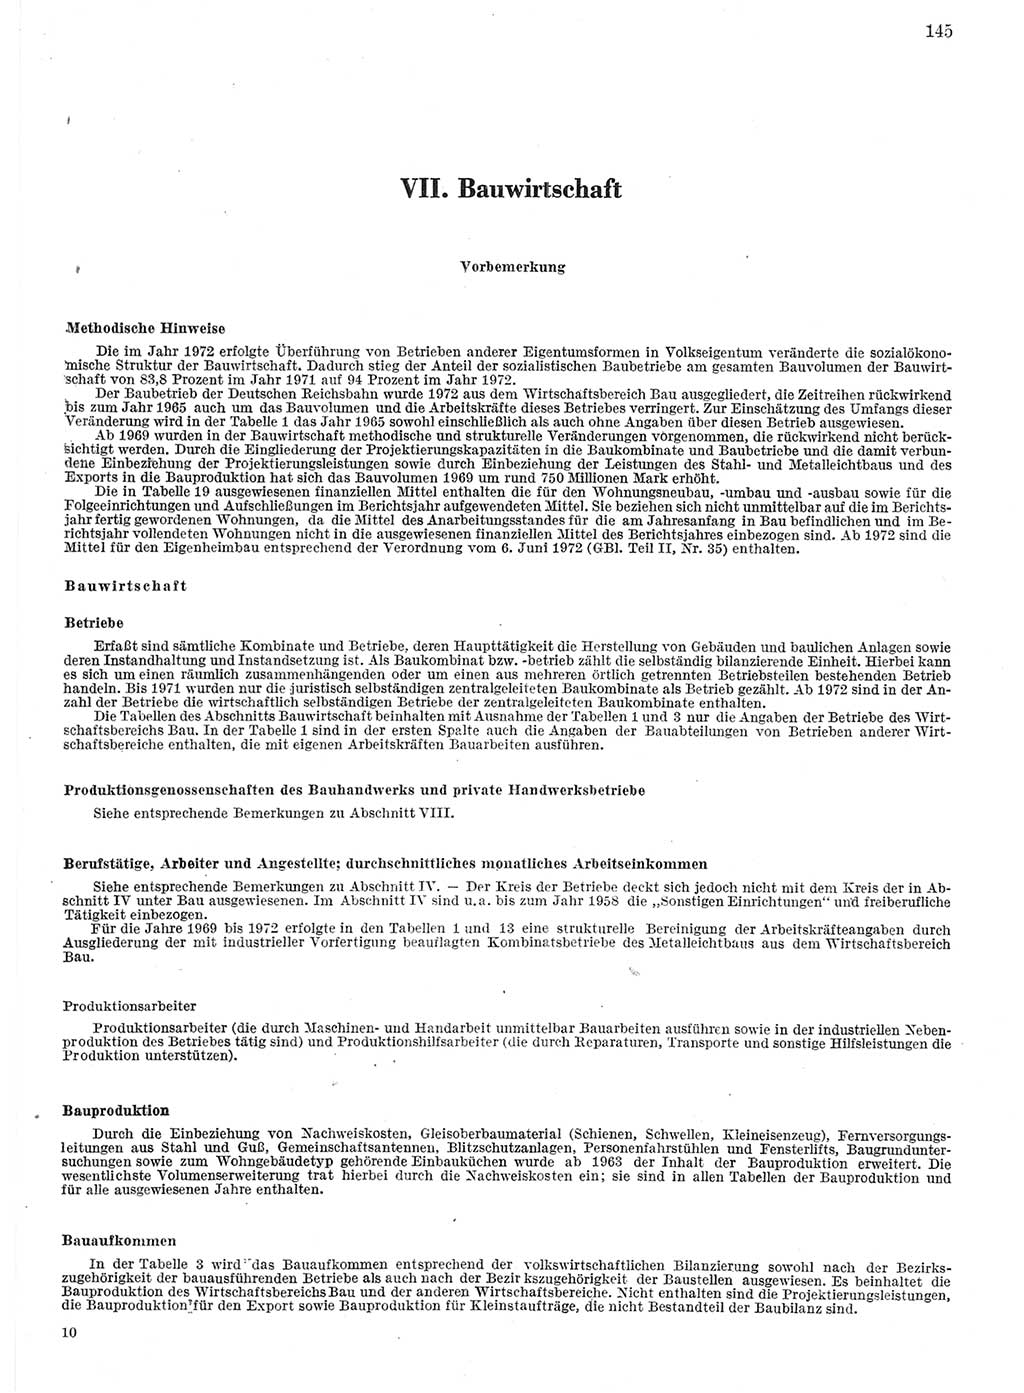 Statistisches Jahrbuch der Deutschen Demokratischen Republik (DDR) 1974, Seite 145 (Stat. Jb. DDR 1974, S. 145)